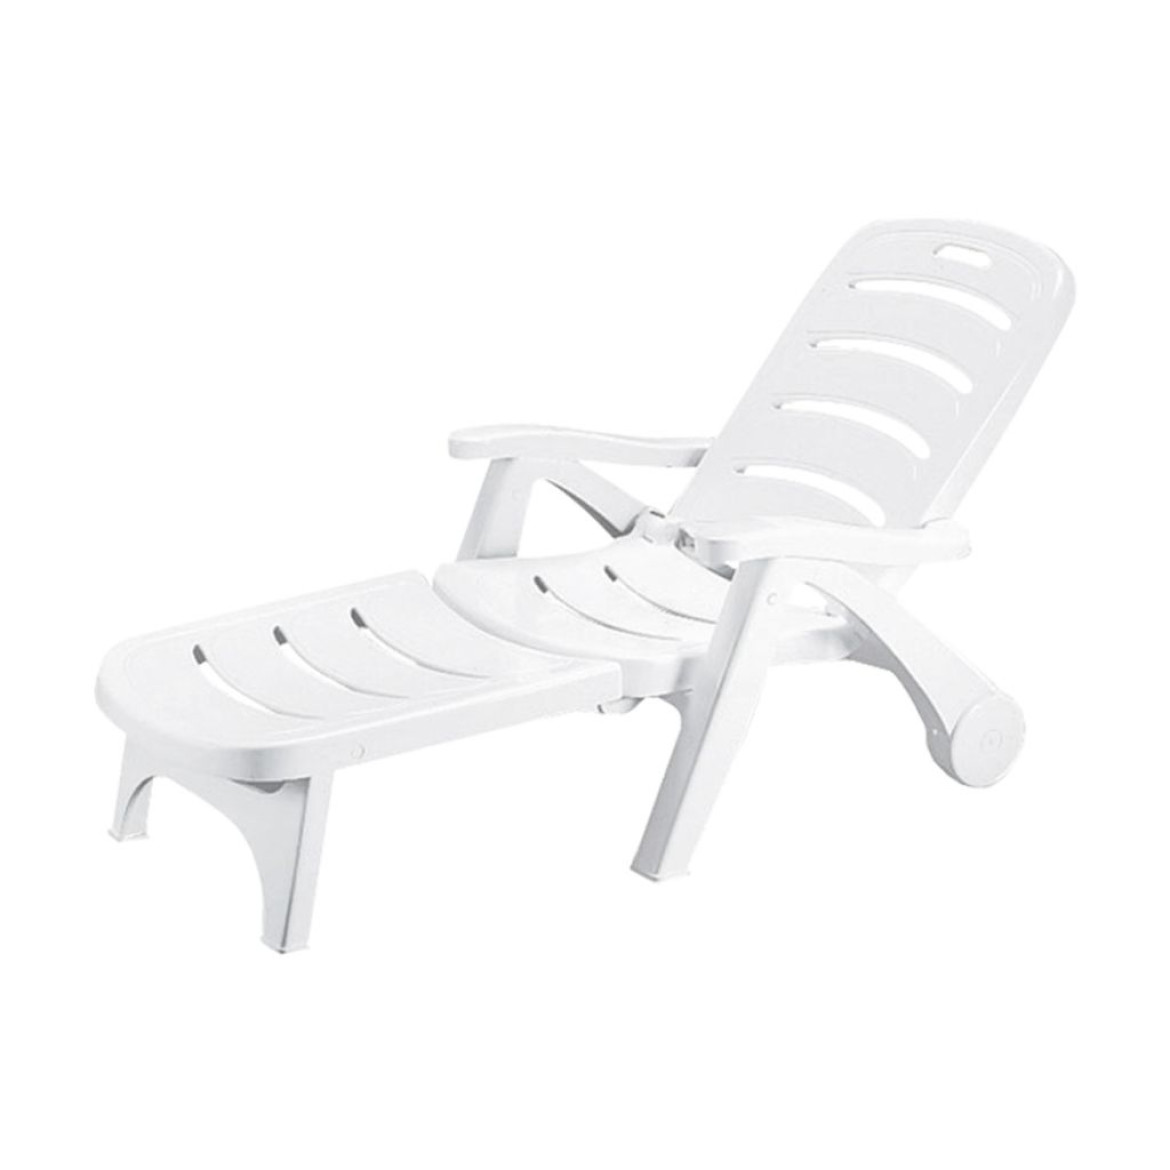 sancilio evotech molfetta - forniture outdoor arredogiardino sedie sedute poltrone divani complementi lounge sostenibilità SCAB